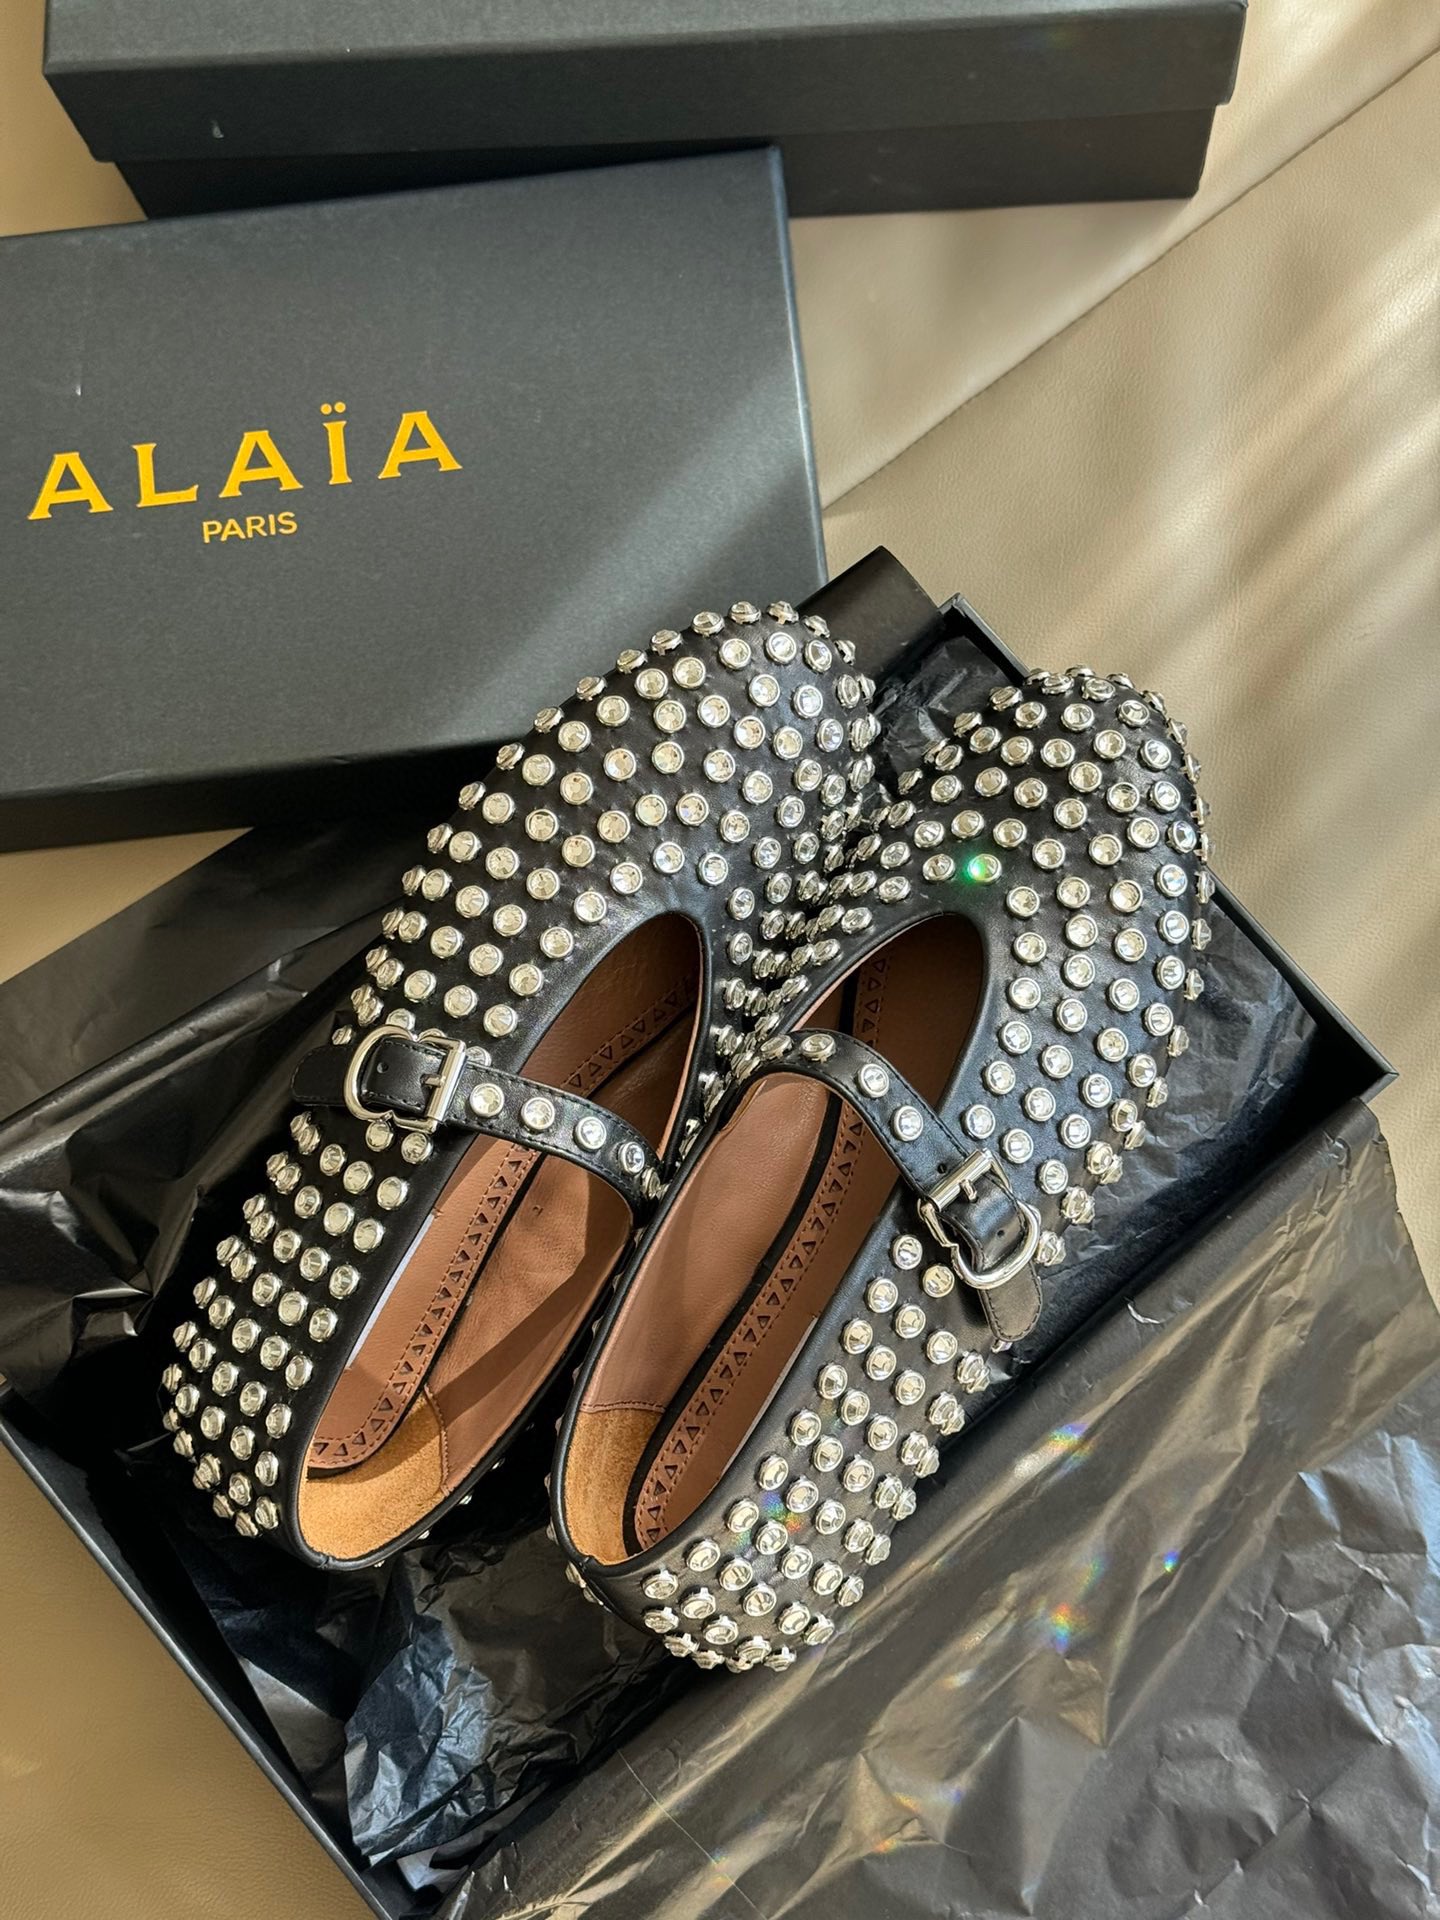 Alaia经典芭蕾舞鞋新品以芭蕾的灵动意韵融于日常以现代笔触刻画舞鞋经典轮廓！黑色钻饰皮质款芭蕾舞鞋从经